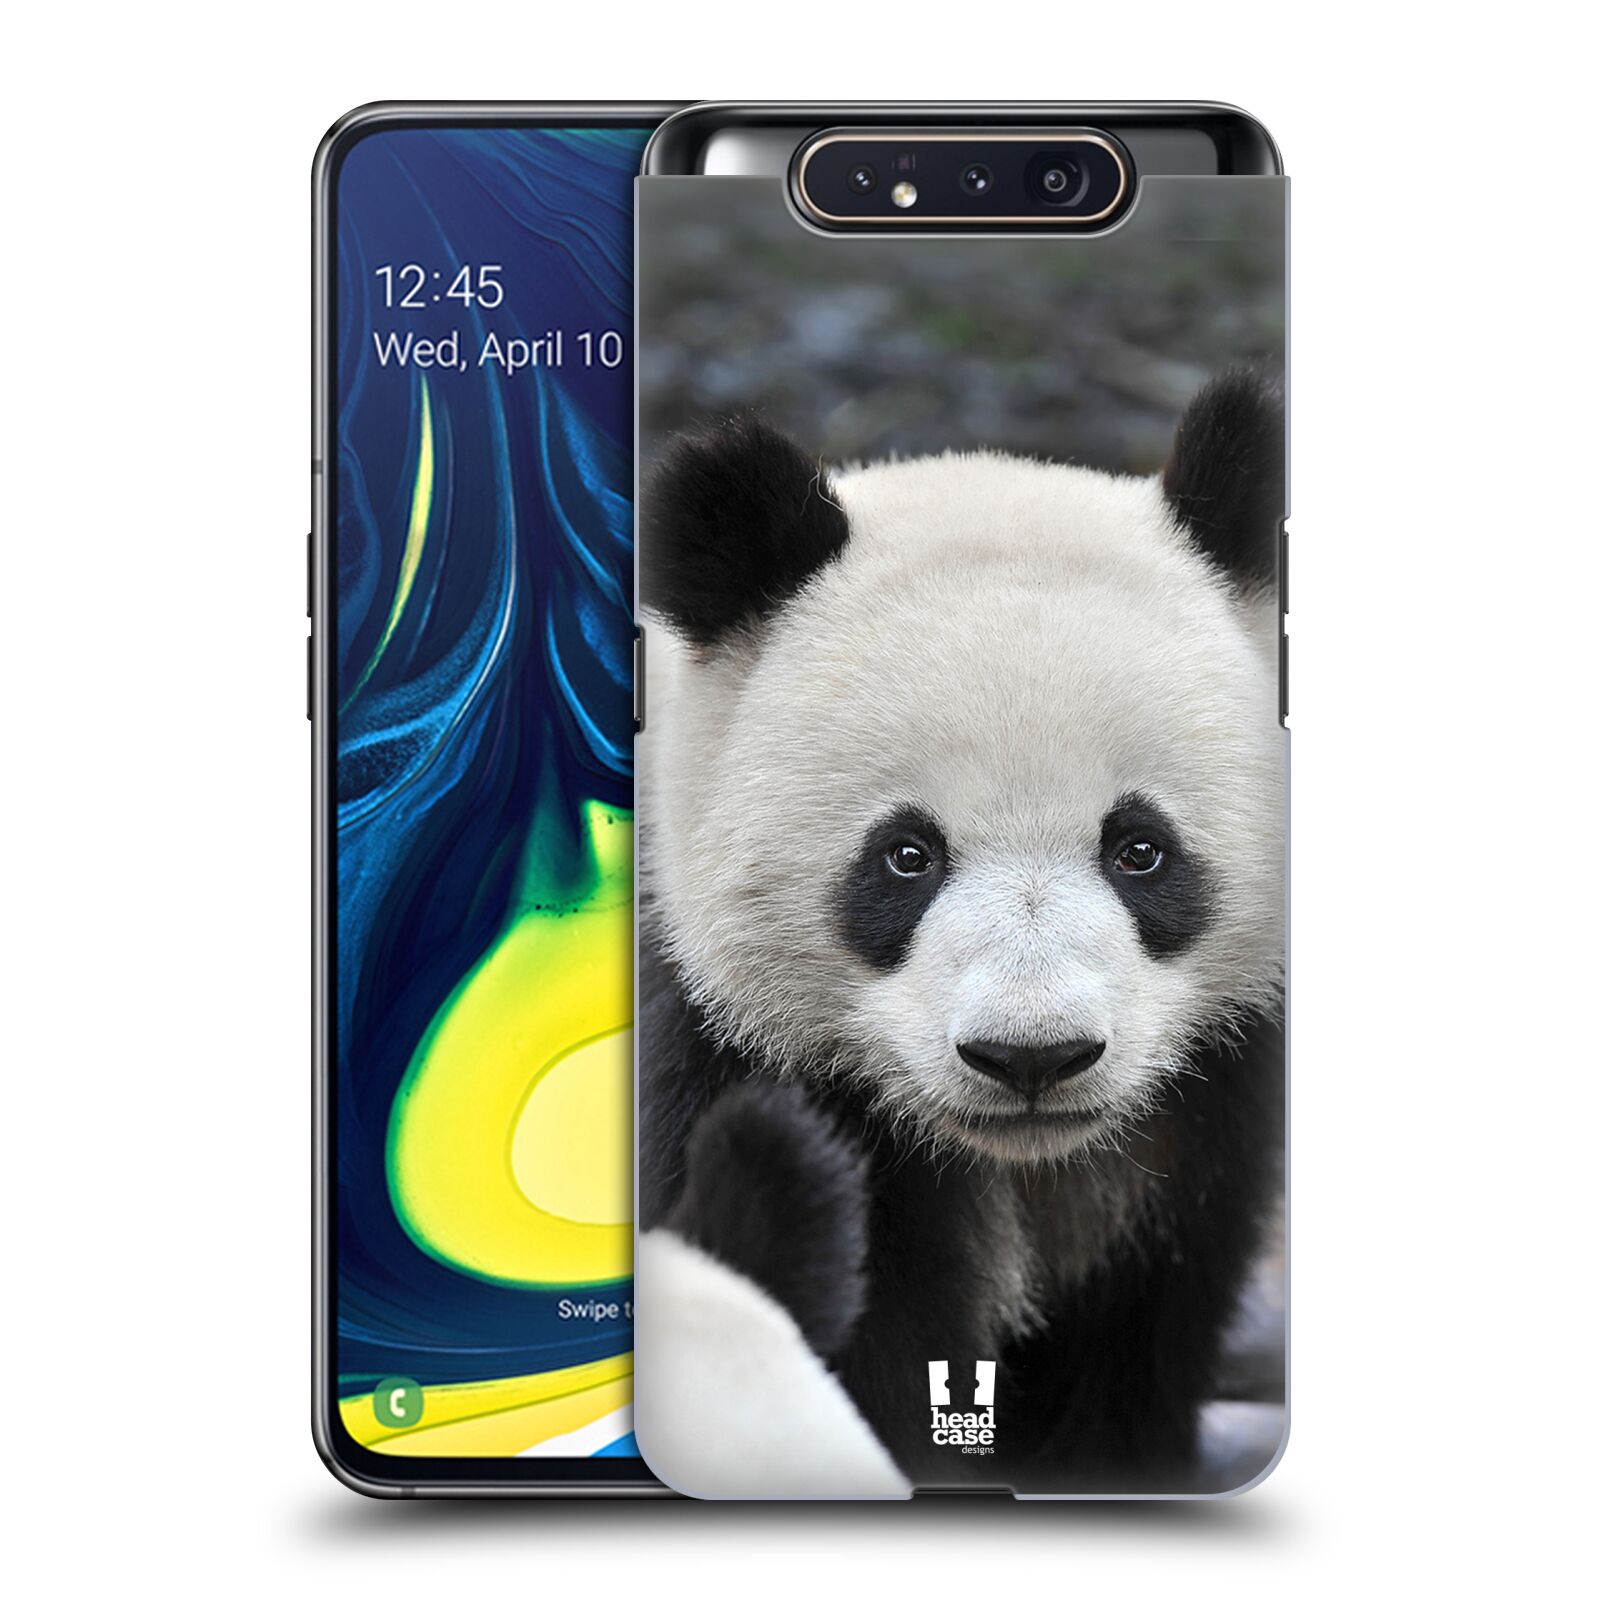 Zadní obal pro mobil Samsung Galaxy A80 - HEAD CASE - Svět zvířat medvěd panda